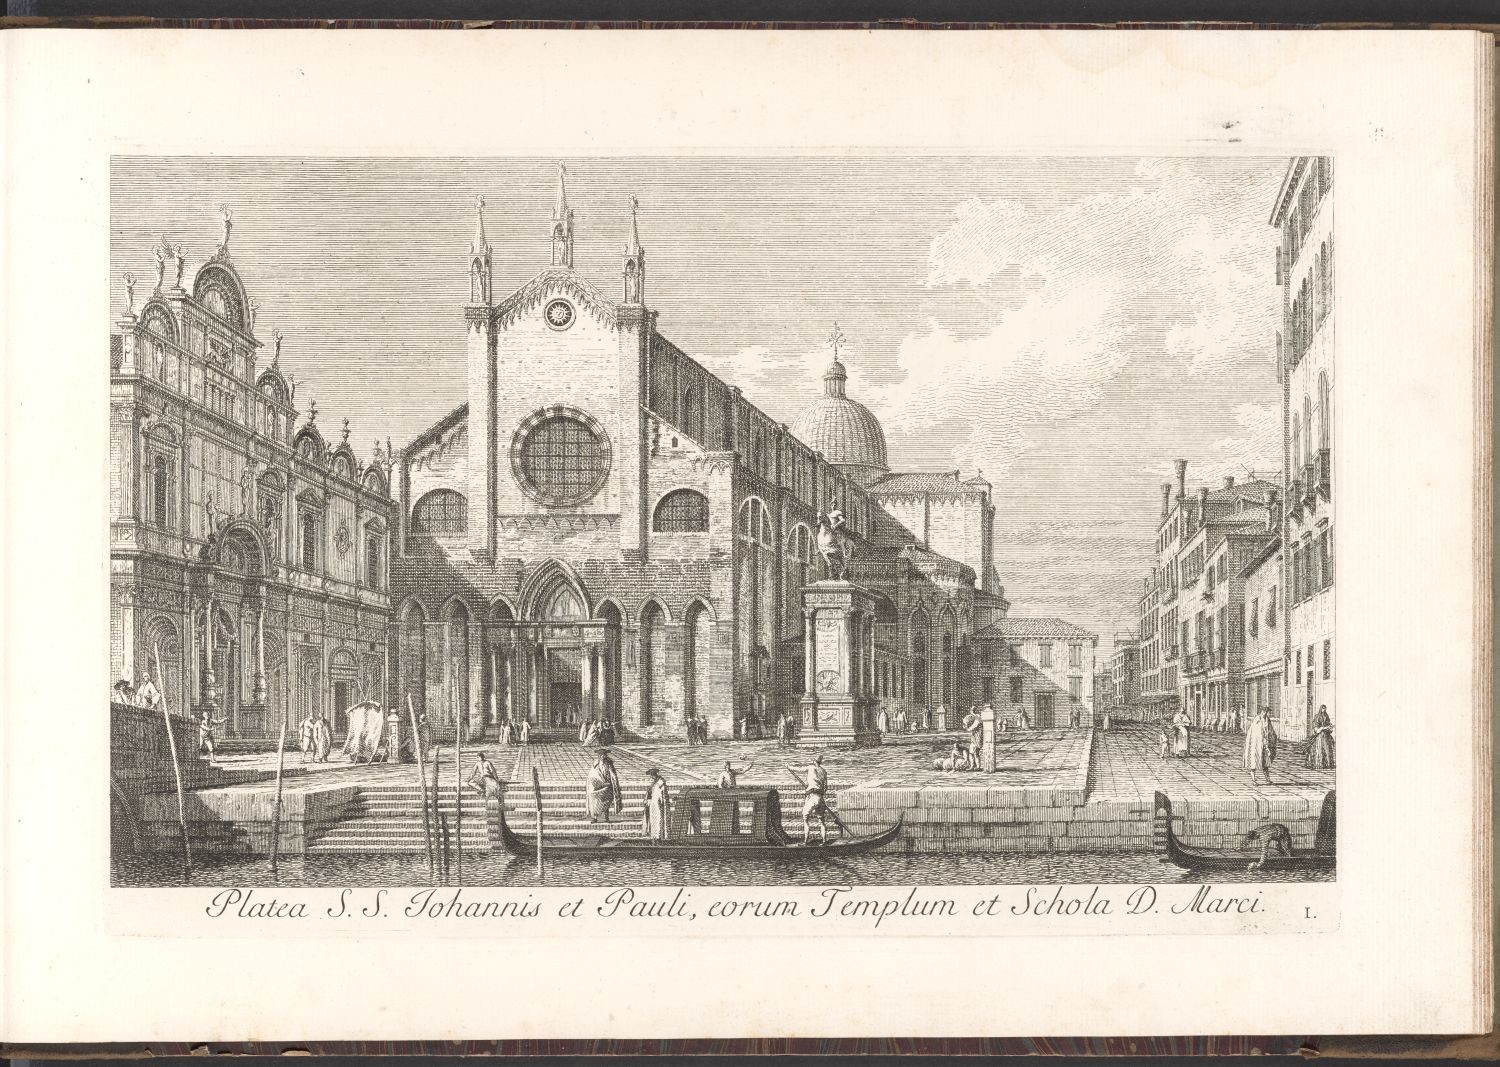 Venedig, I. Platea S.S. Johannis et Pauli, eorum Templum et Schola D. Marci. (Stiftung Händelhaus, Halle CC BY-NC-SA)